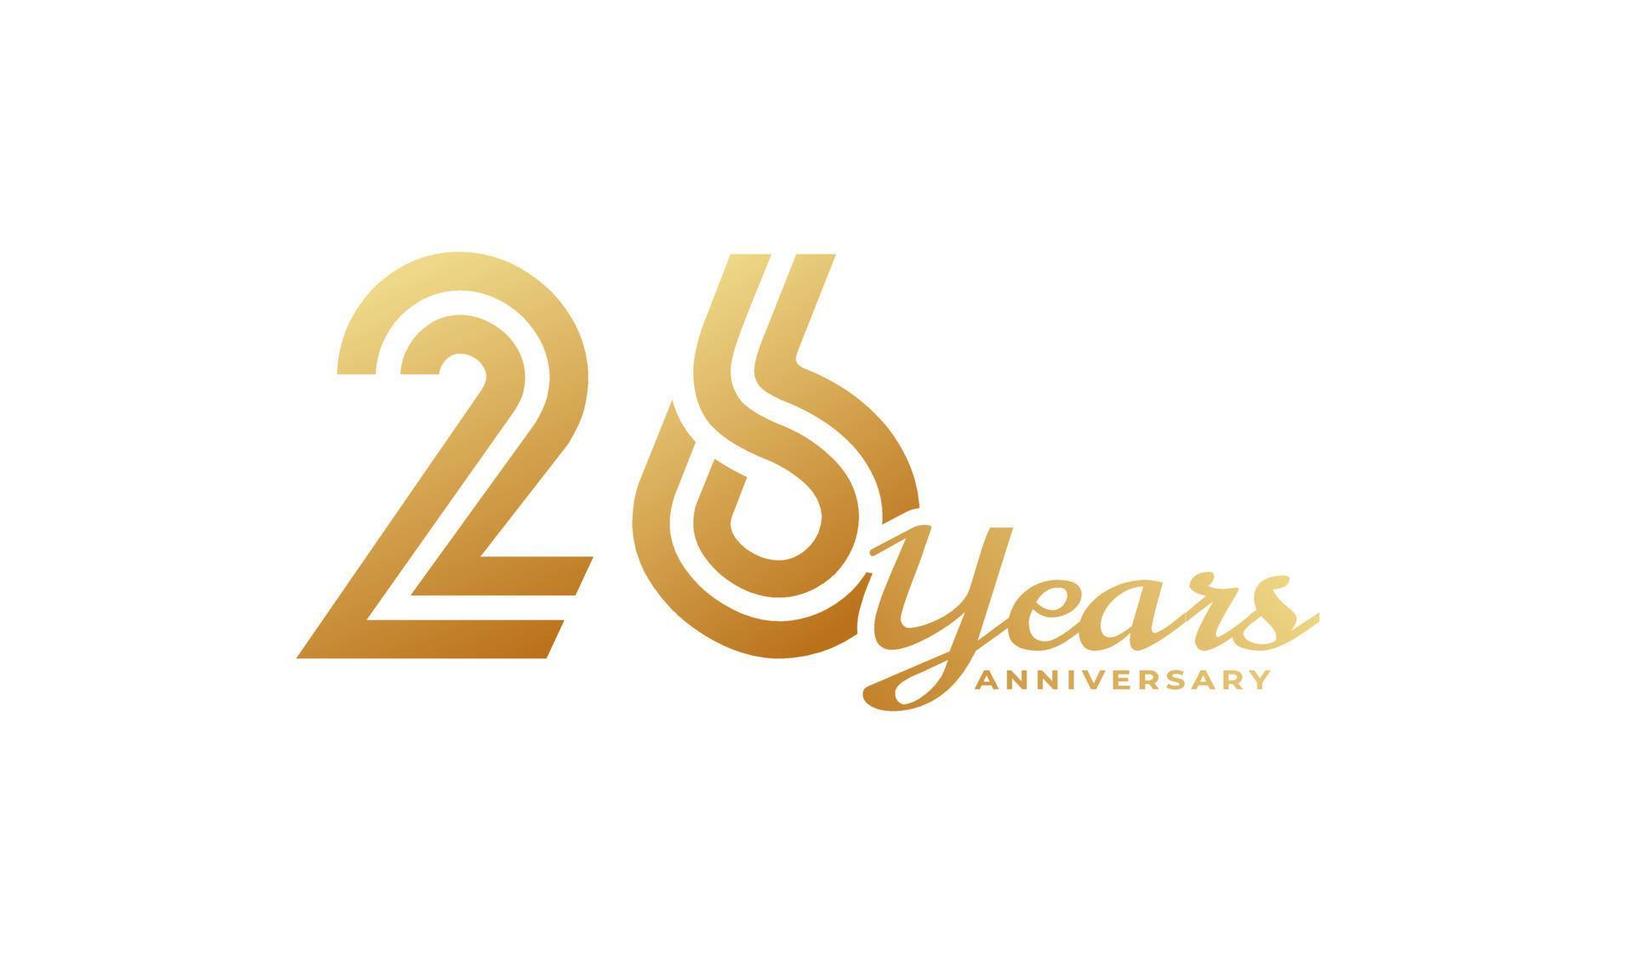 26-jährige Jubiläumsfeier mit goldener Farbe der Handschrift für Feierereignis, Hochzeit, Grußkarte und Einladung lokalisiert auf weißem Hintergrund vektor